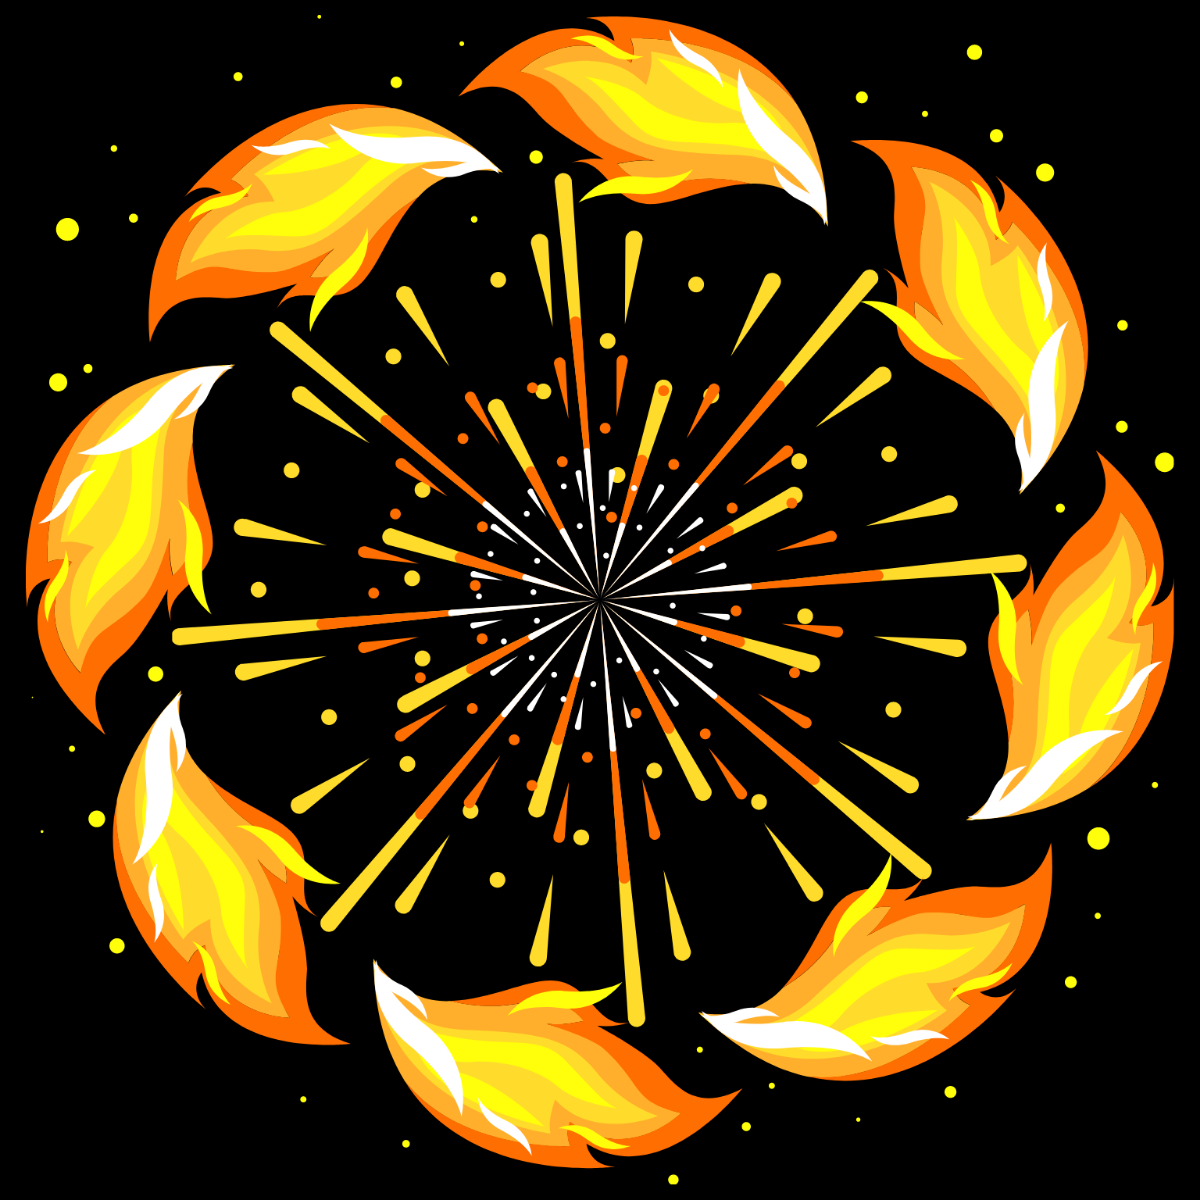 Fire Flower Vector Template